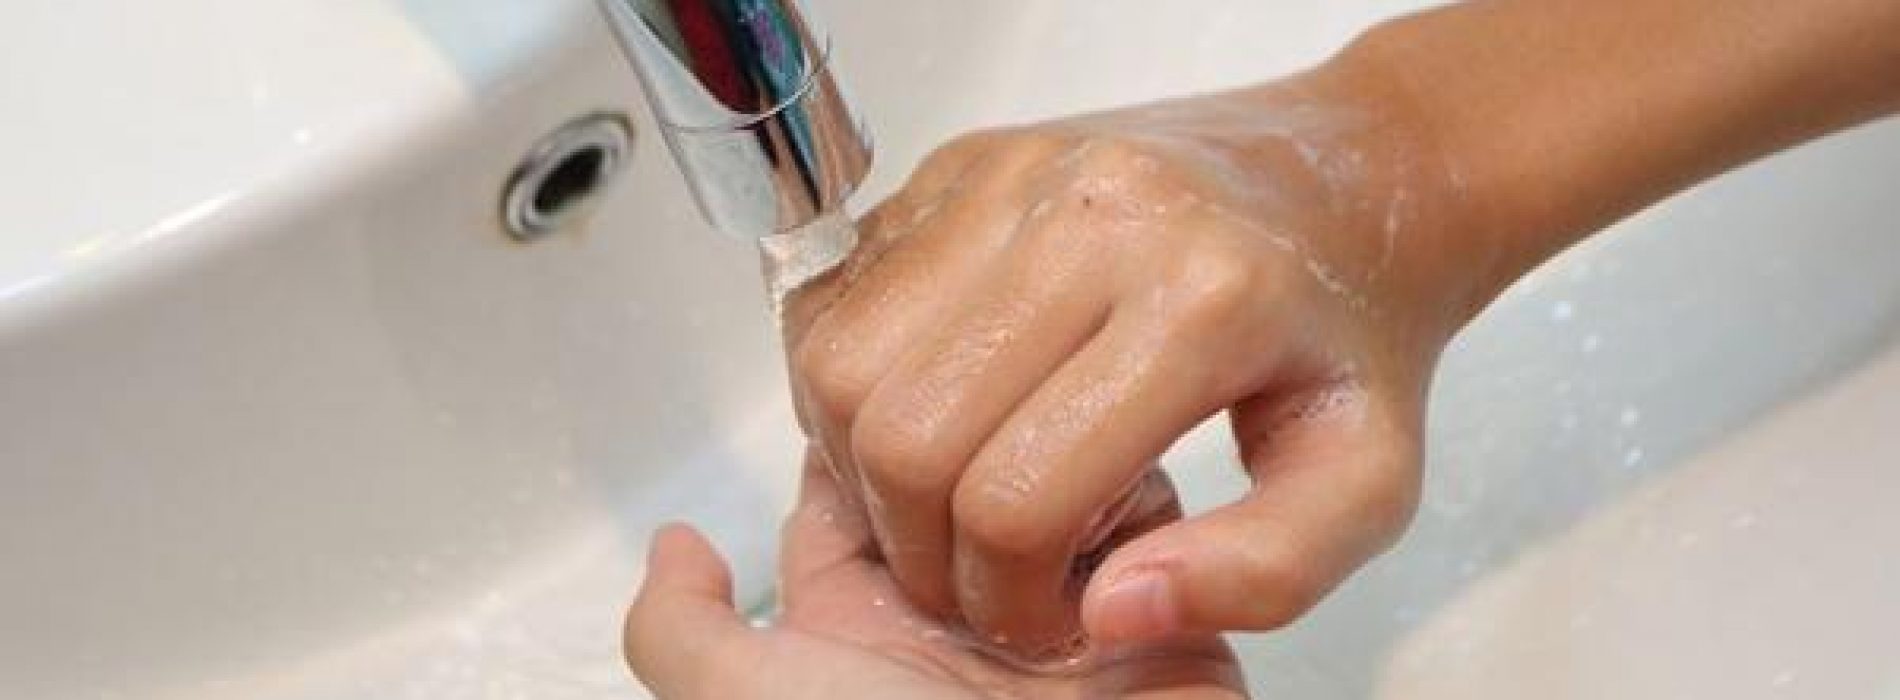 Zeven redenen waarom u beter geen antibacteriële zeep gebruikt